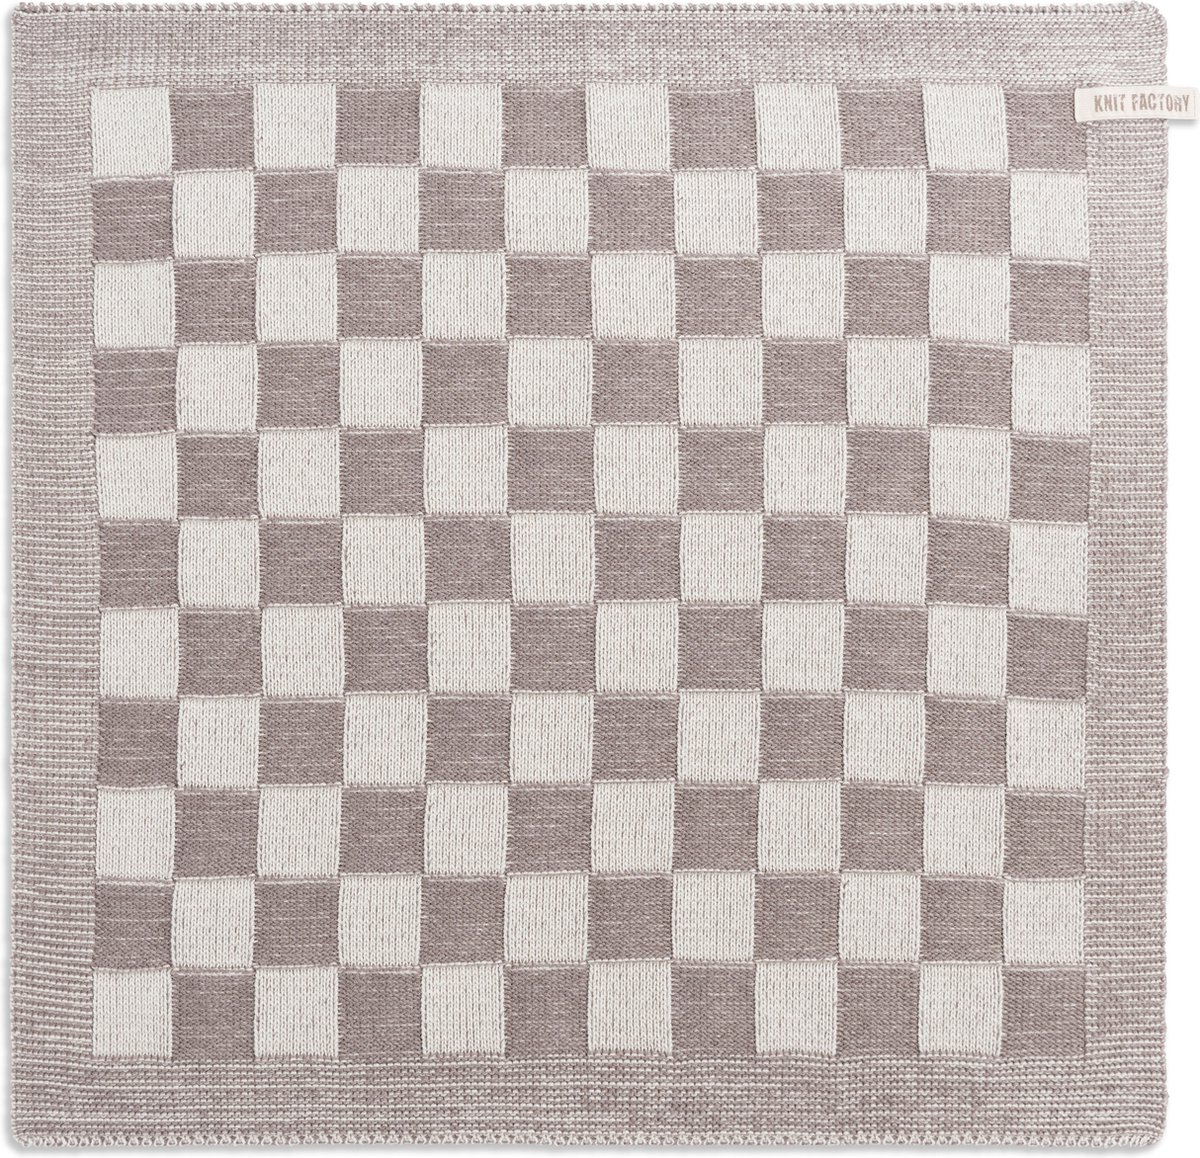 Knit Factory Gebreide Keukendoek - Keukenhanddoek Block - Geblokt motief - Handdoek - Vaatdoek - Keuken doek - Ecru/Taupe - Traditionele look - 50x50 cm